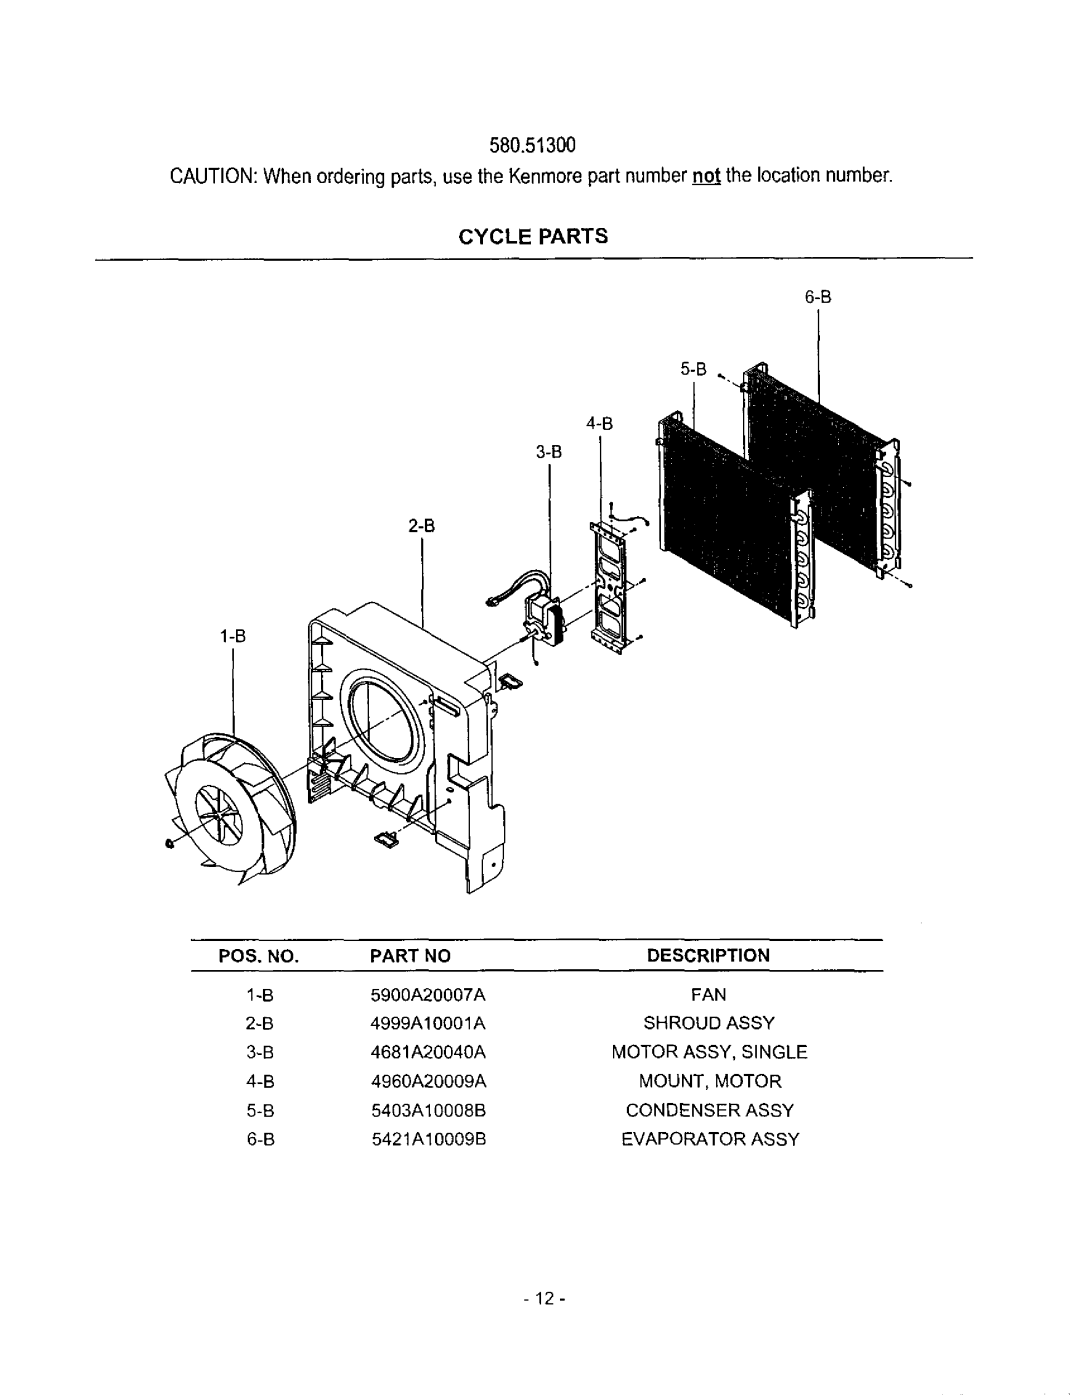 Kenmore owner manual 580.51300, Cycle Parts, Pos, No, Description 